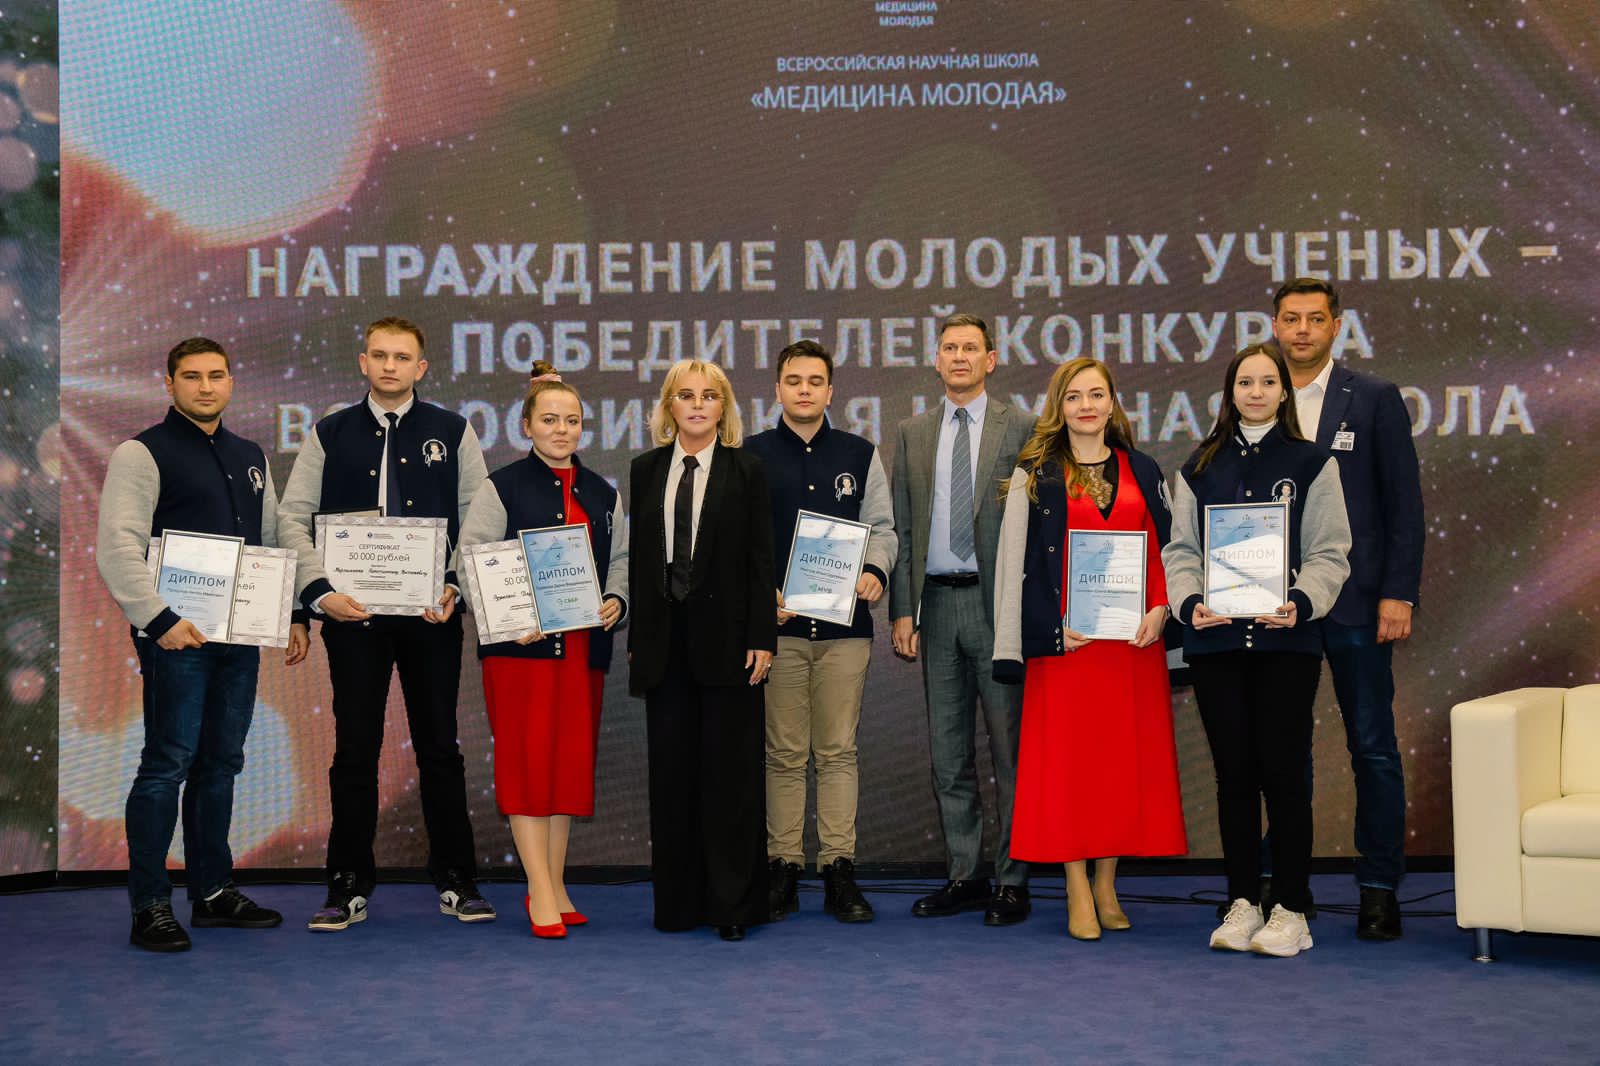 В форуме «Медицина молодая» приняли участие более 500 молодых ученых России 2